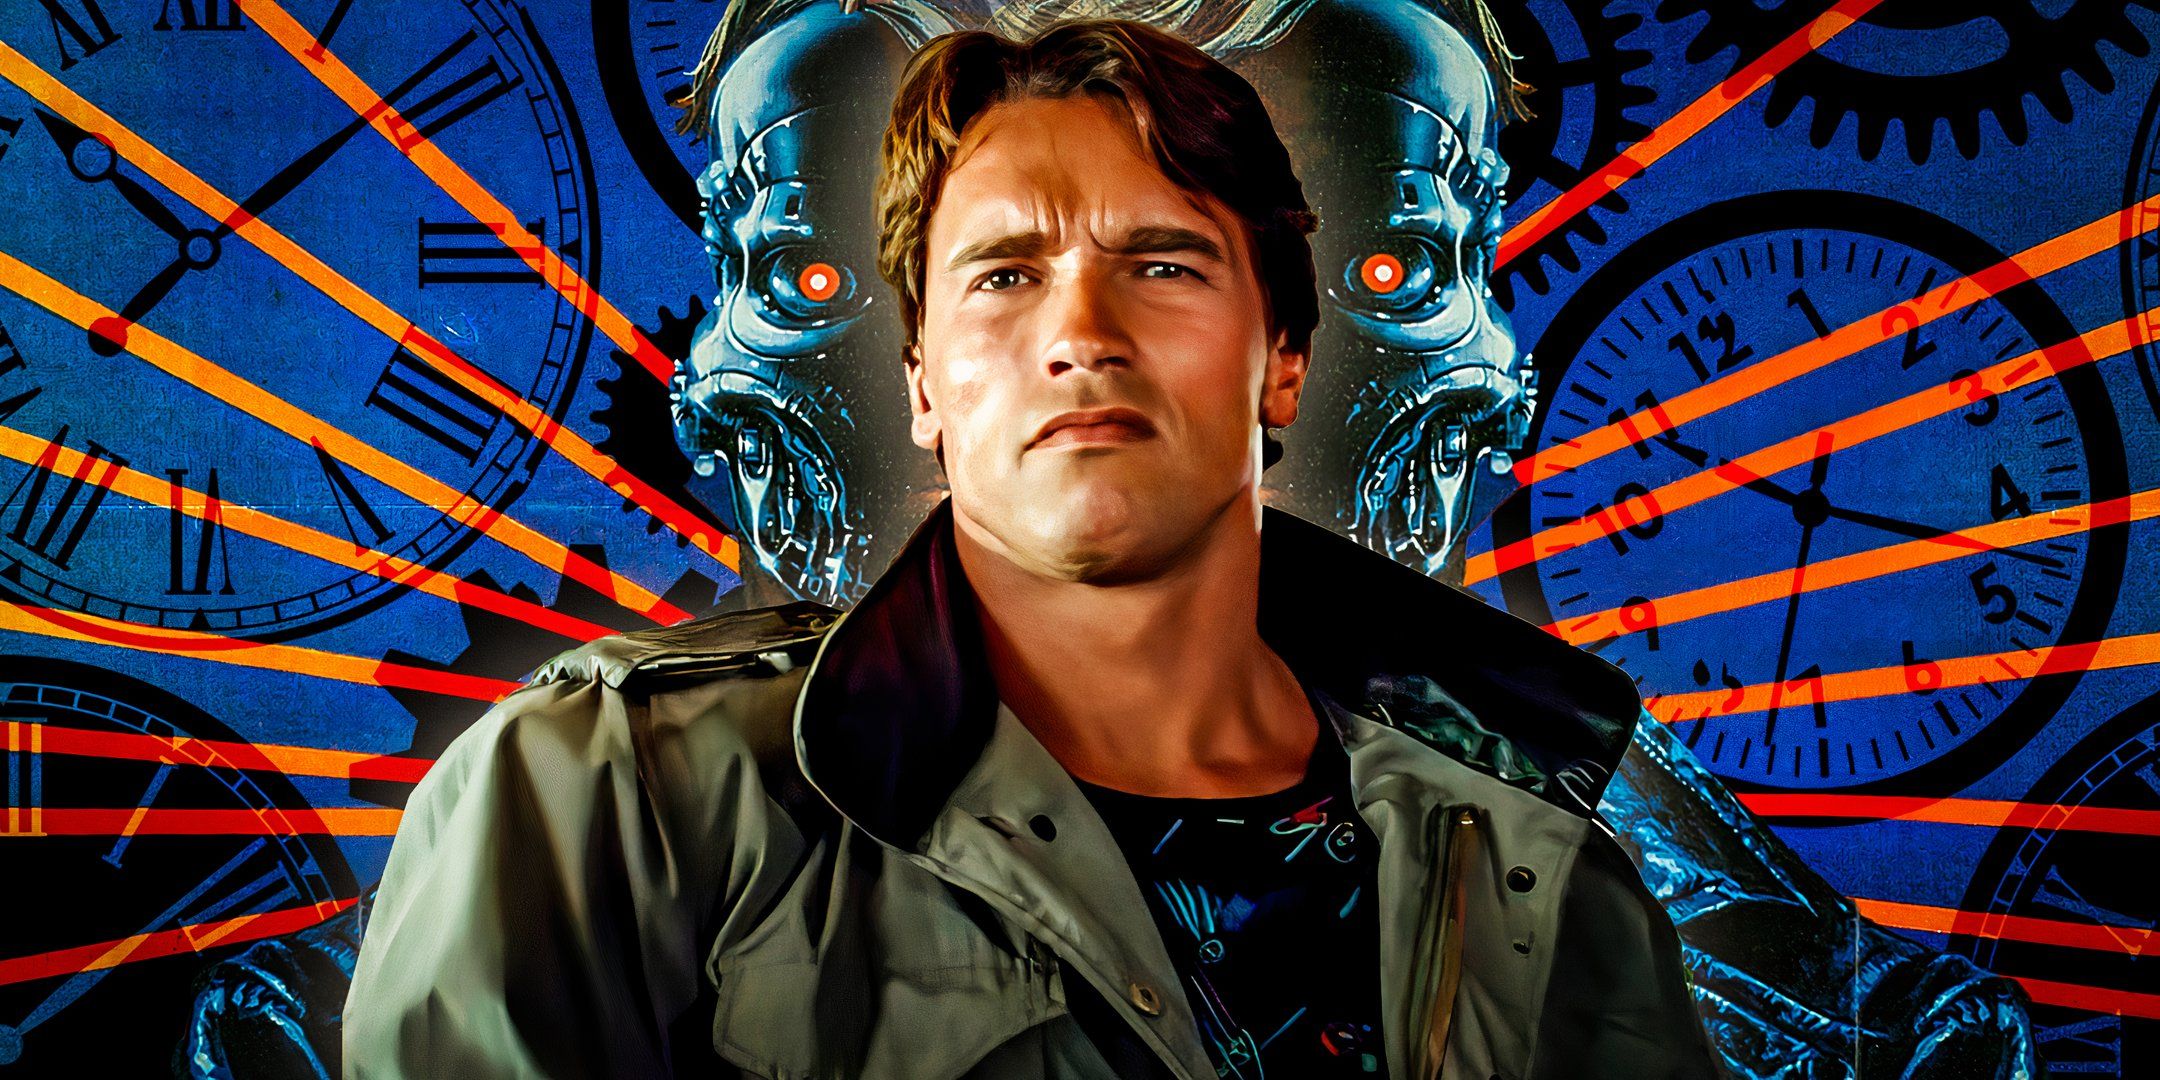 Arnold Schwarzenegger as Terminator from The Terminator